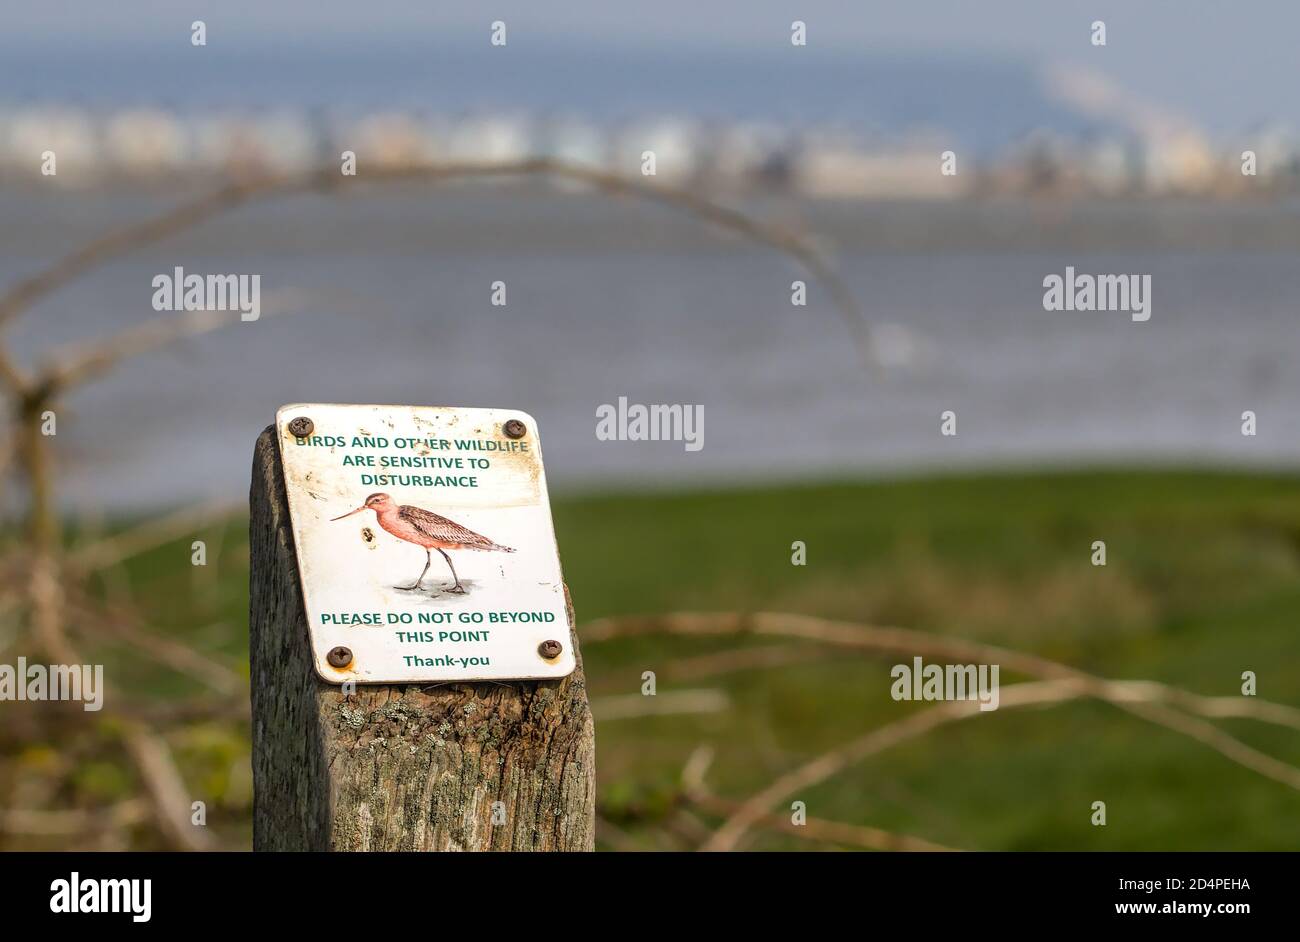 Signe d'avertissement poli pour être au courant de la nidification des oiseaux avec une photo d'UN oiseau de Dieu sur UN pieu en bois patiné Stanpit nature Reserve, Royaume-Uni Banque D'Images